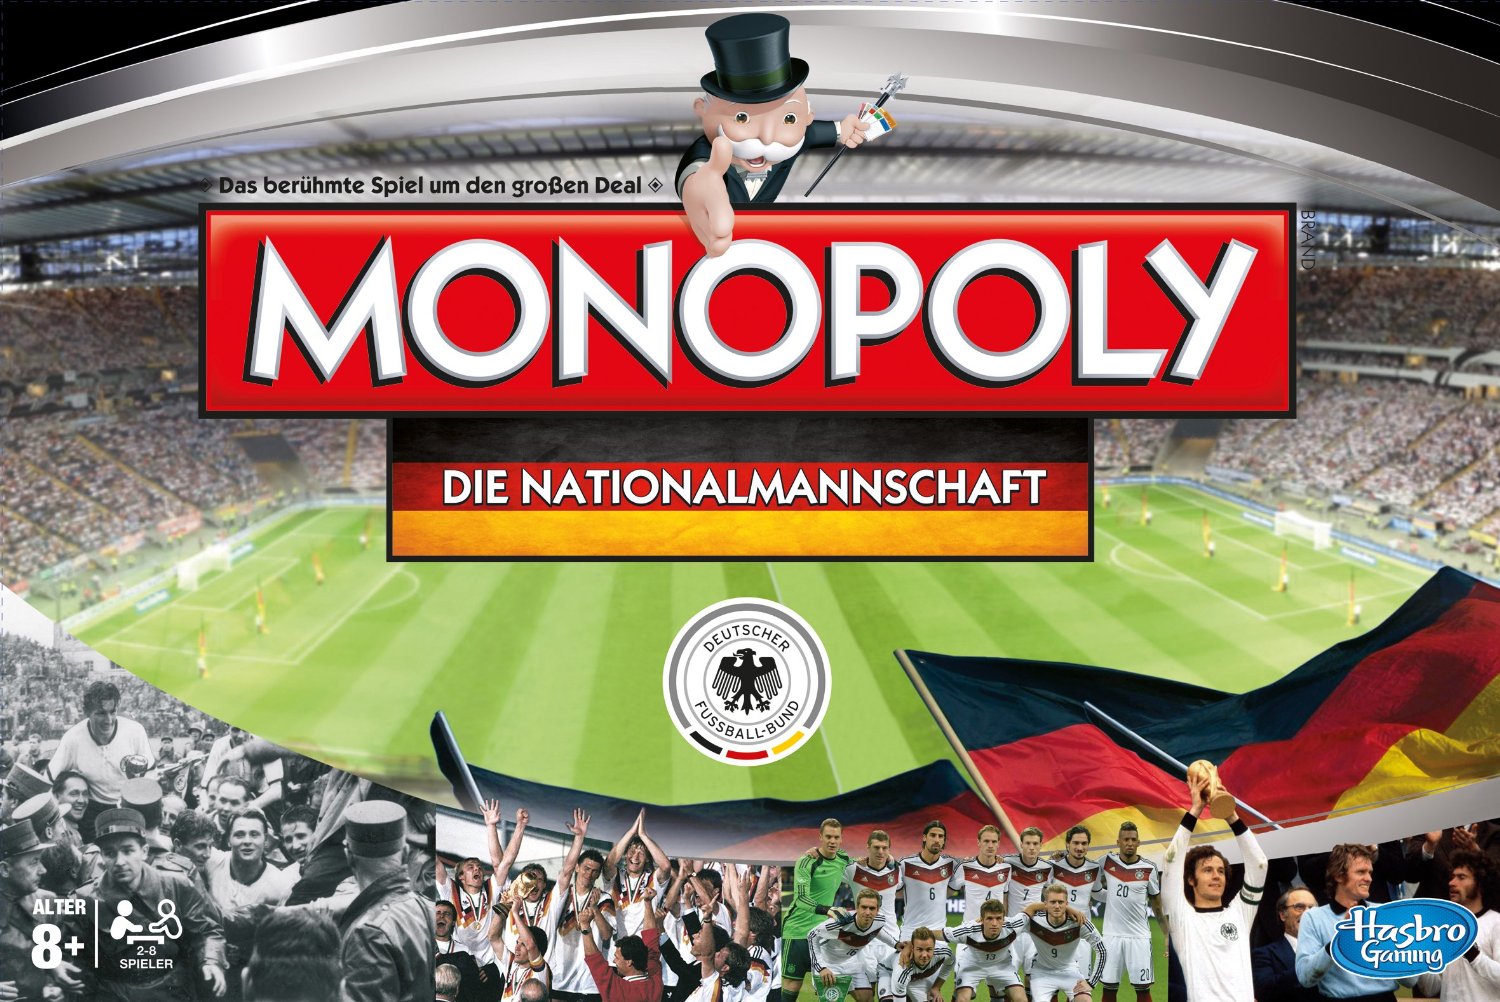 Monopoly: Die Nationalmannschaft, Spiel, Anleitung und Bewertung auf Alle Brettspiele bei spielen.de